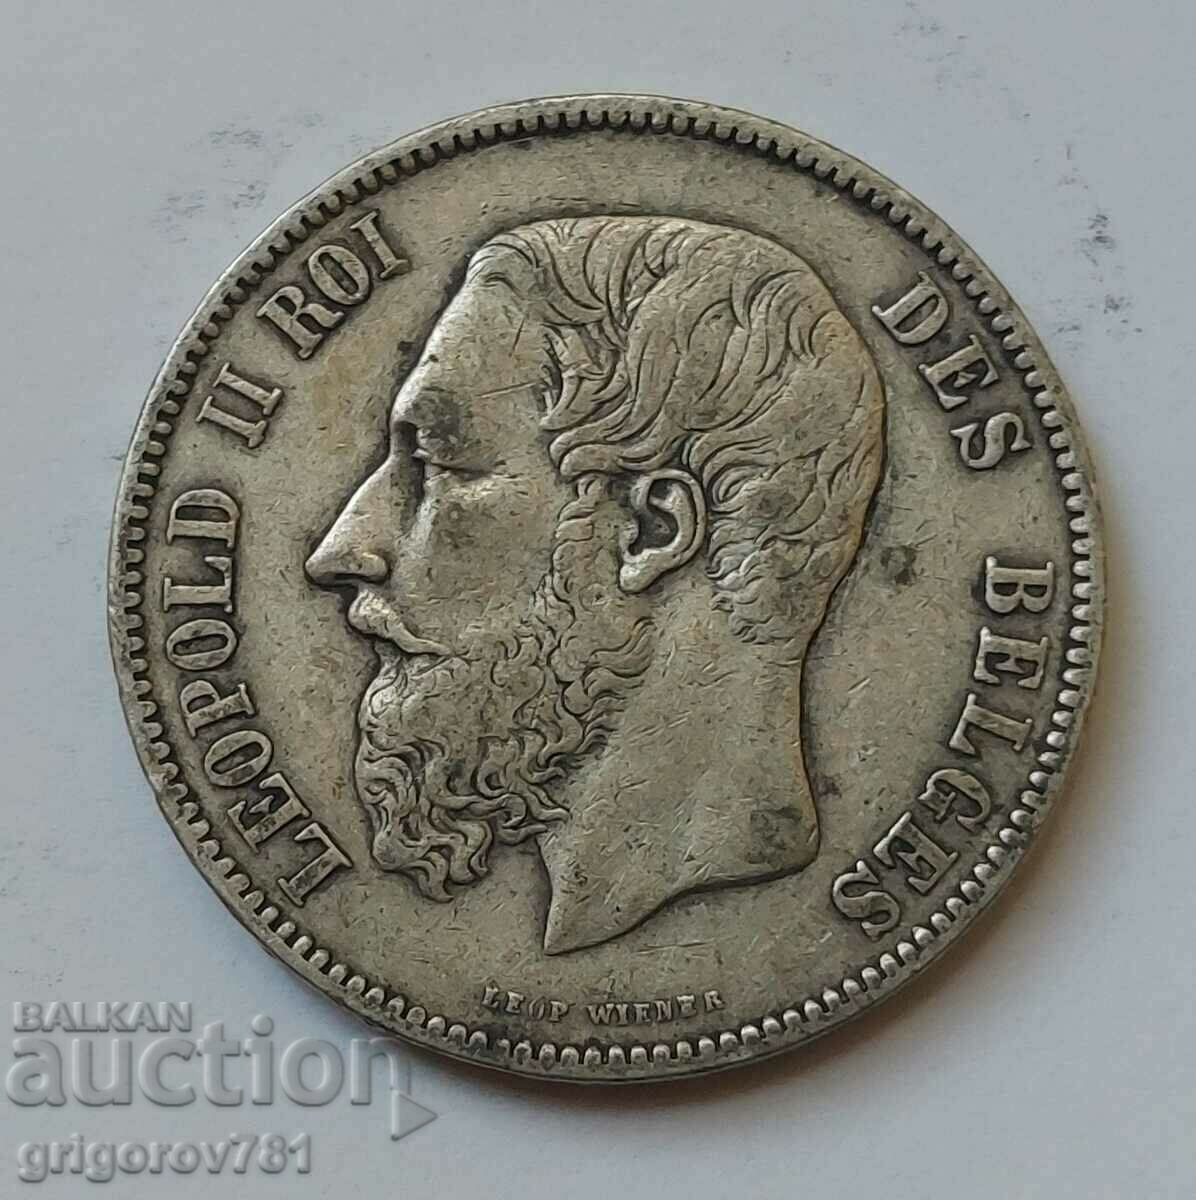 Ασημένιο 5 Φράγκα Βέλγιο 1873 - Ασημένιο νόμισμα #229